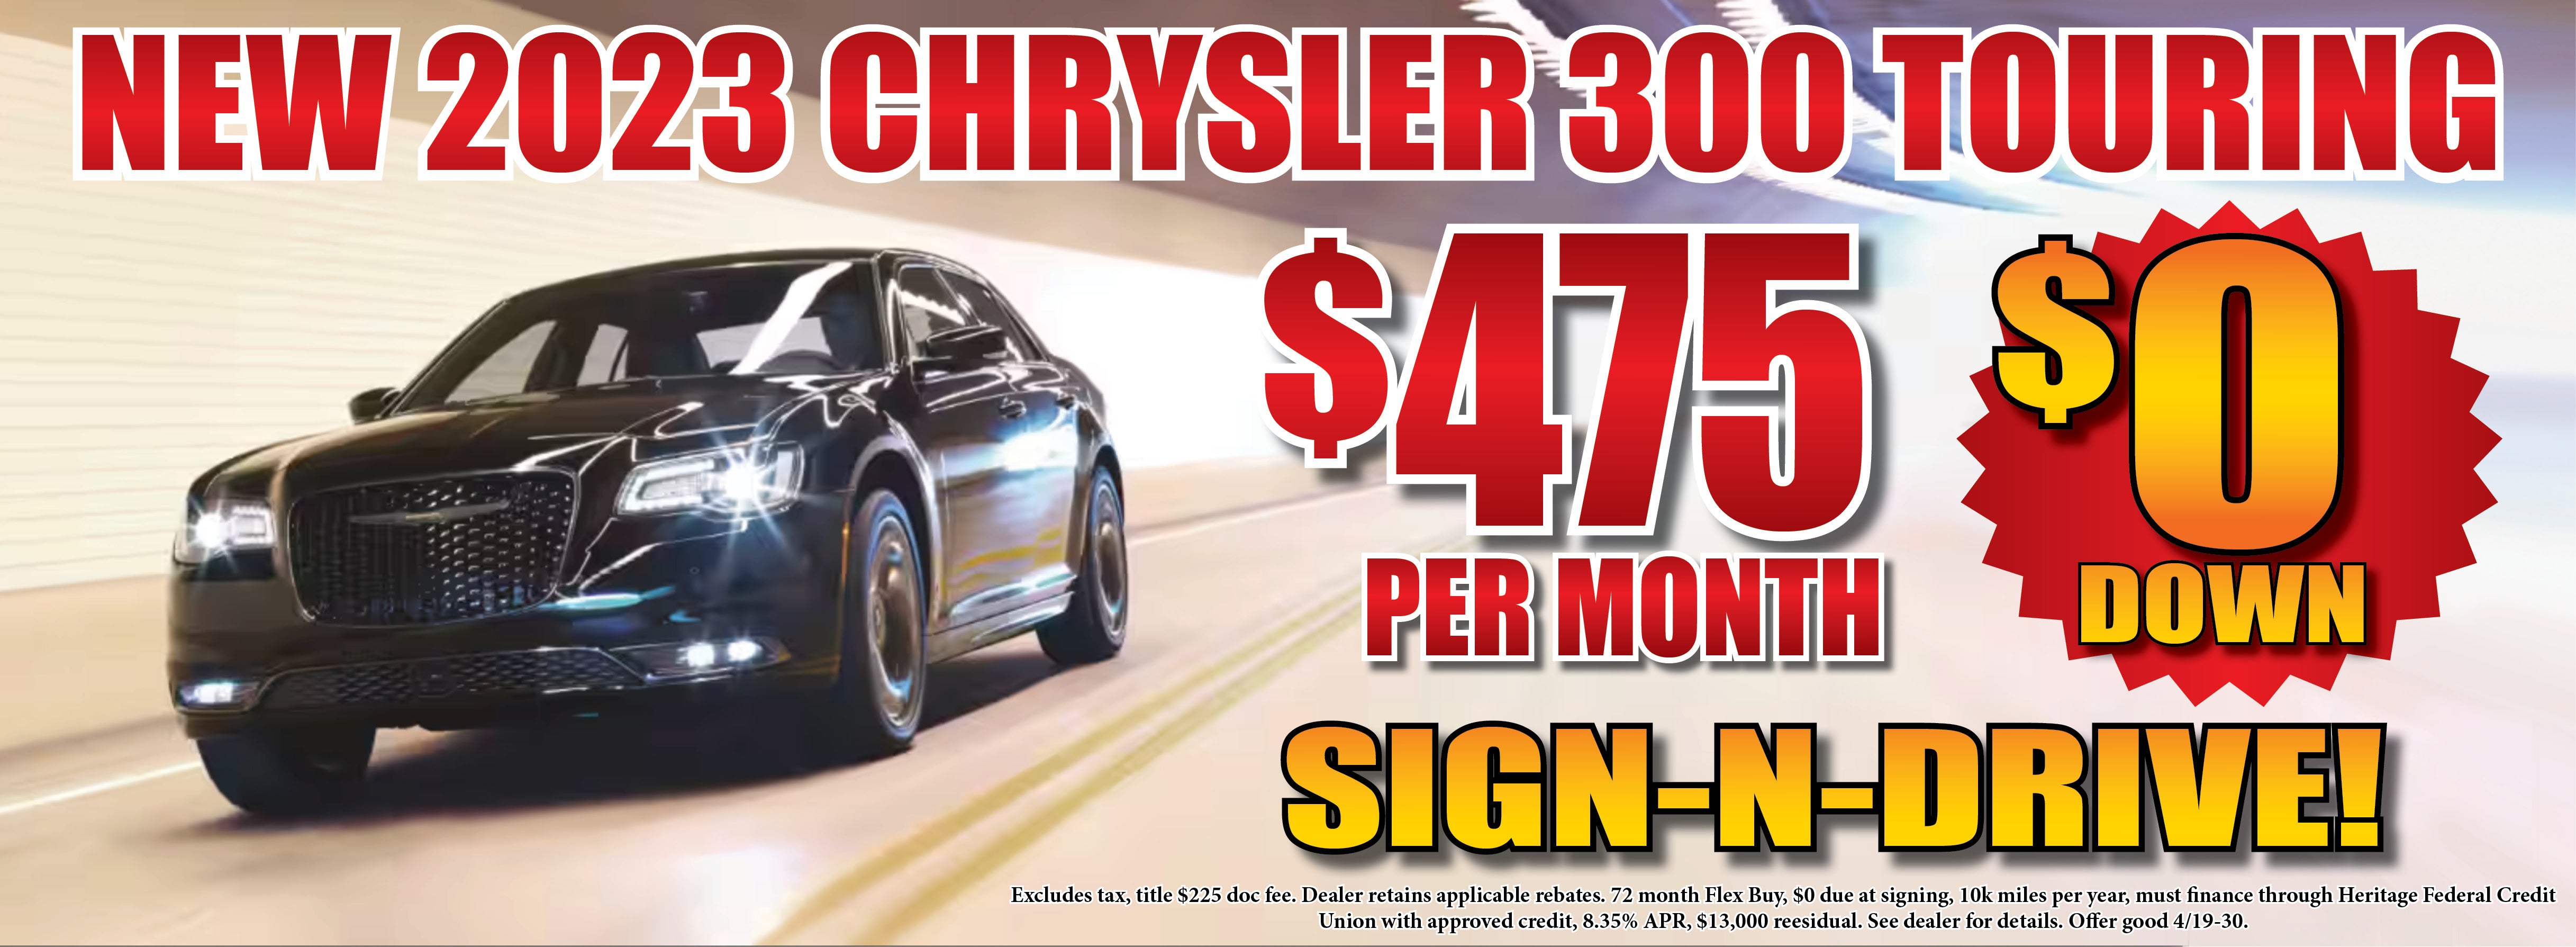 New 2023 Chrysler 300